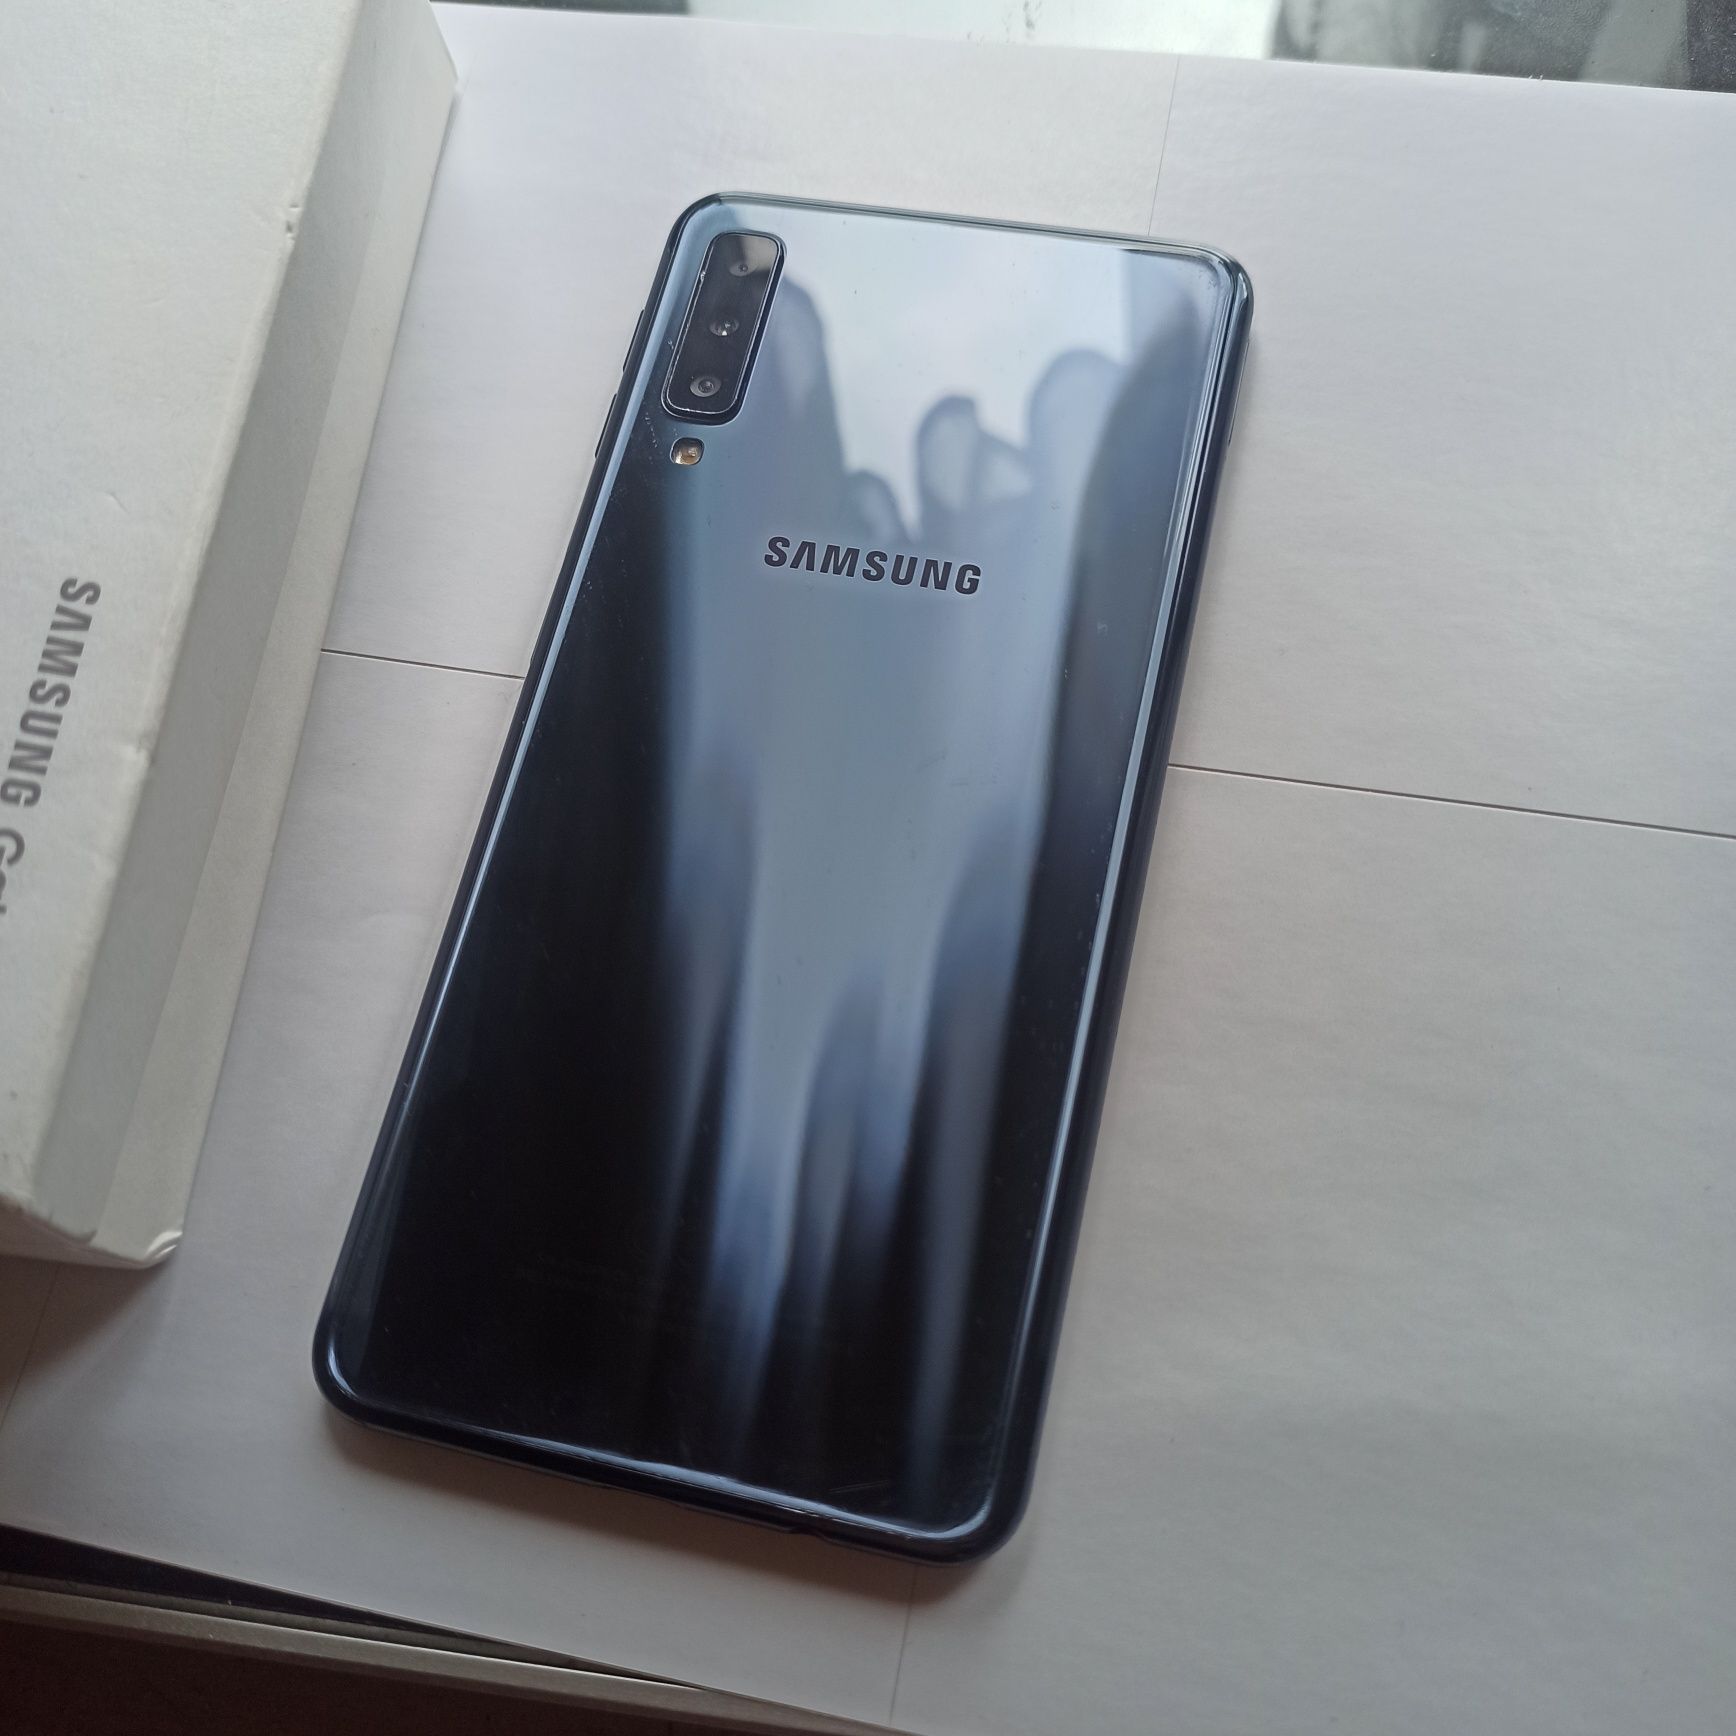 Samsung galaxy A7 (2018), ИДЕАЛЬНЫЙ!!!